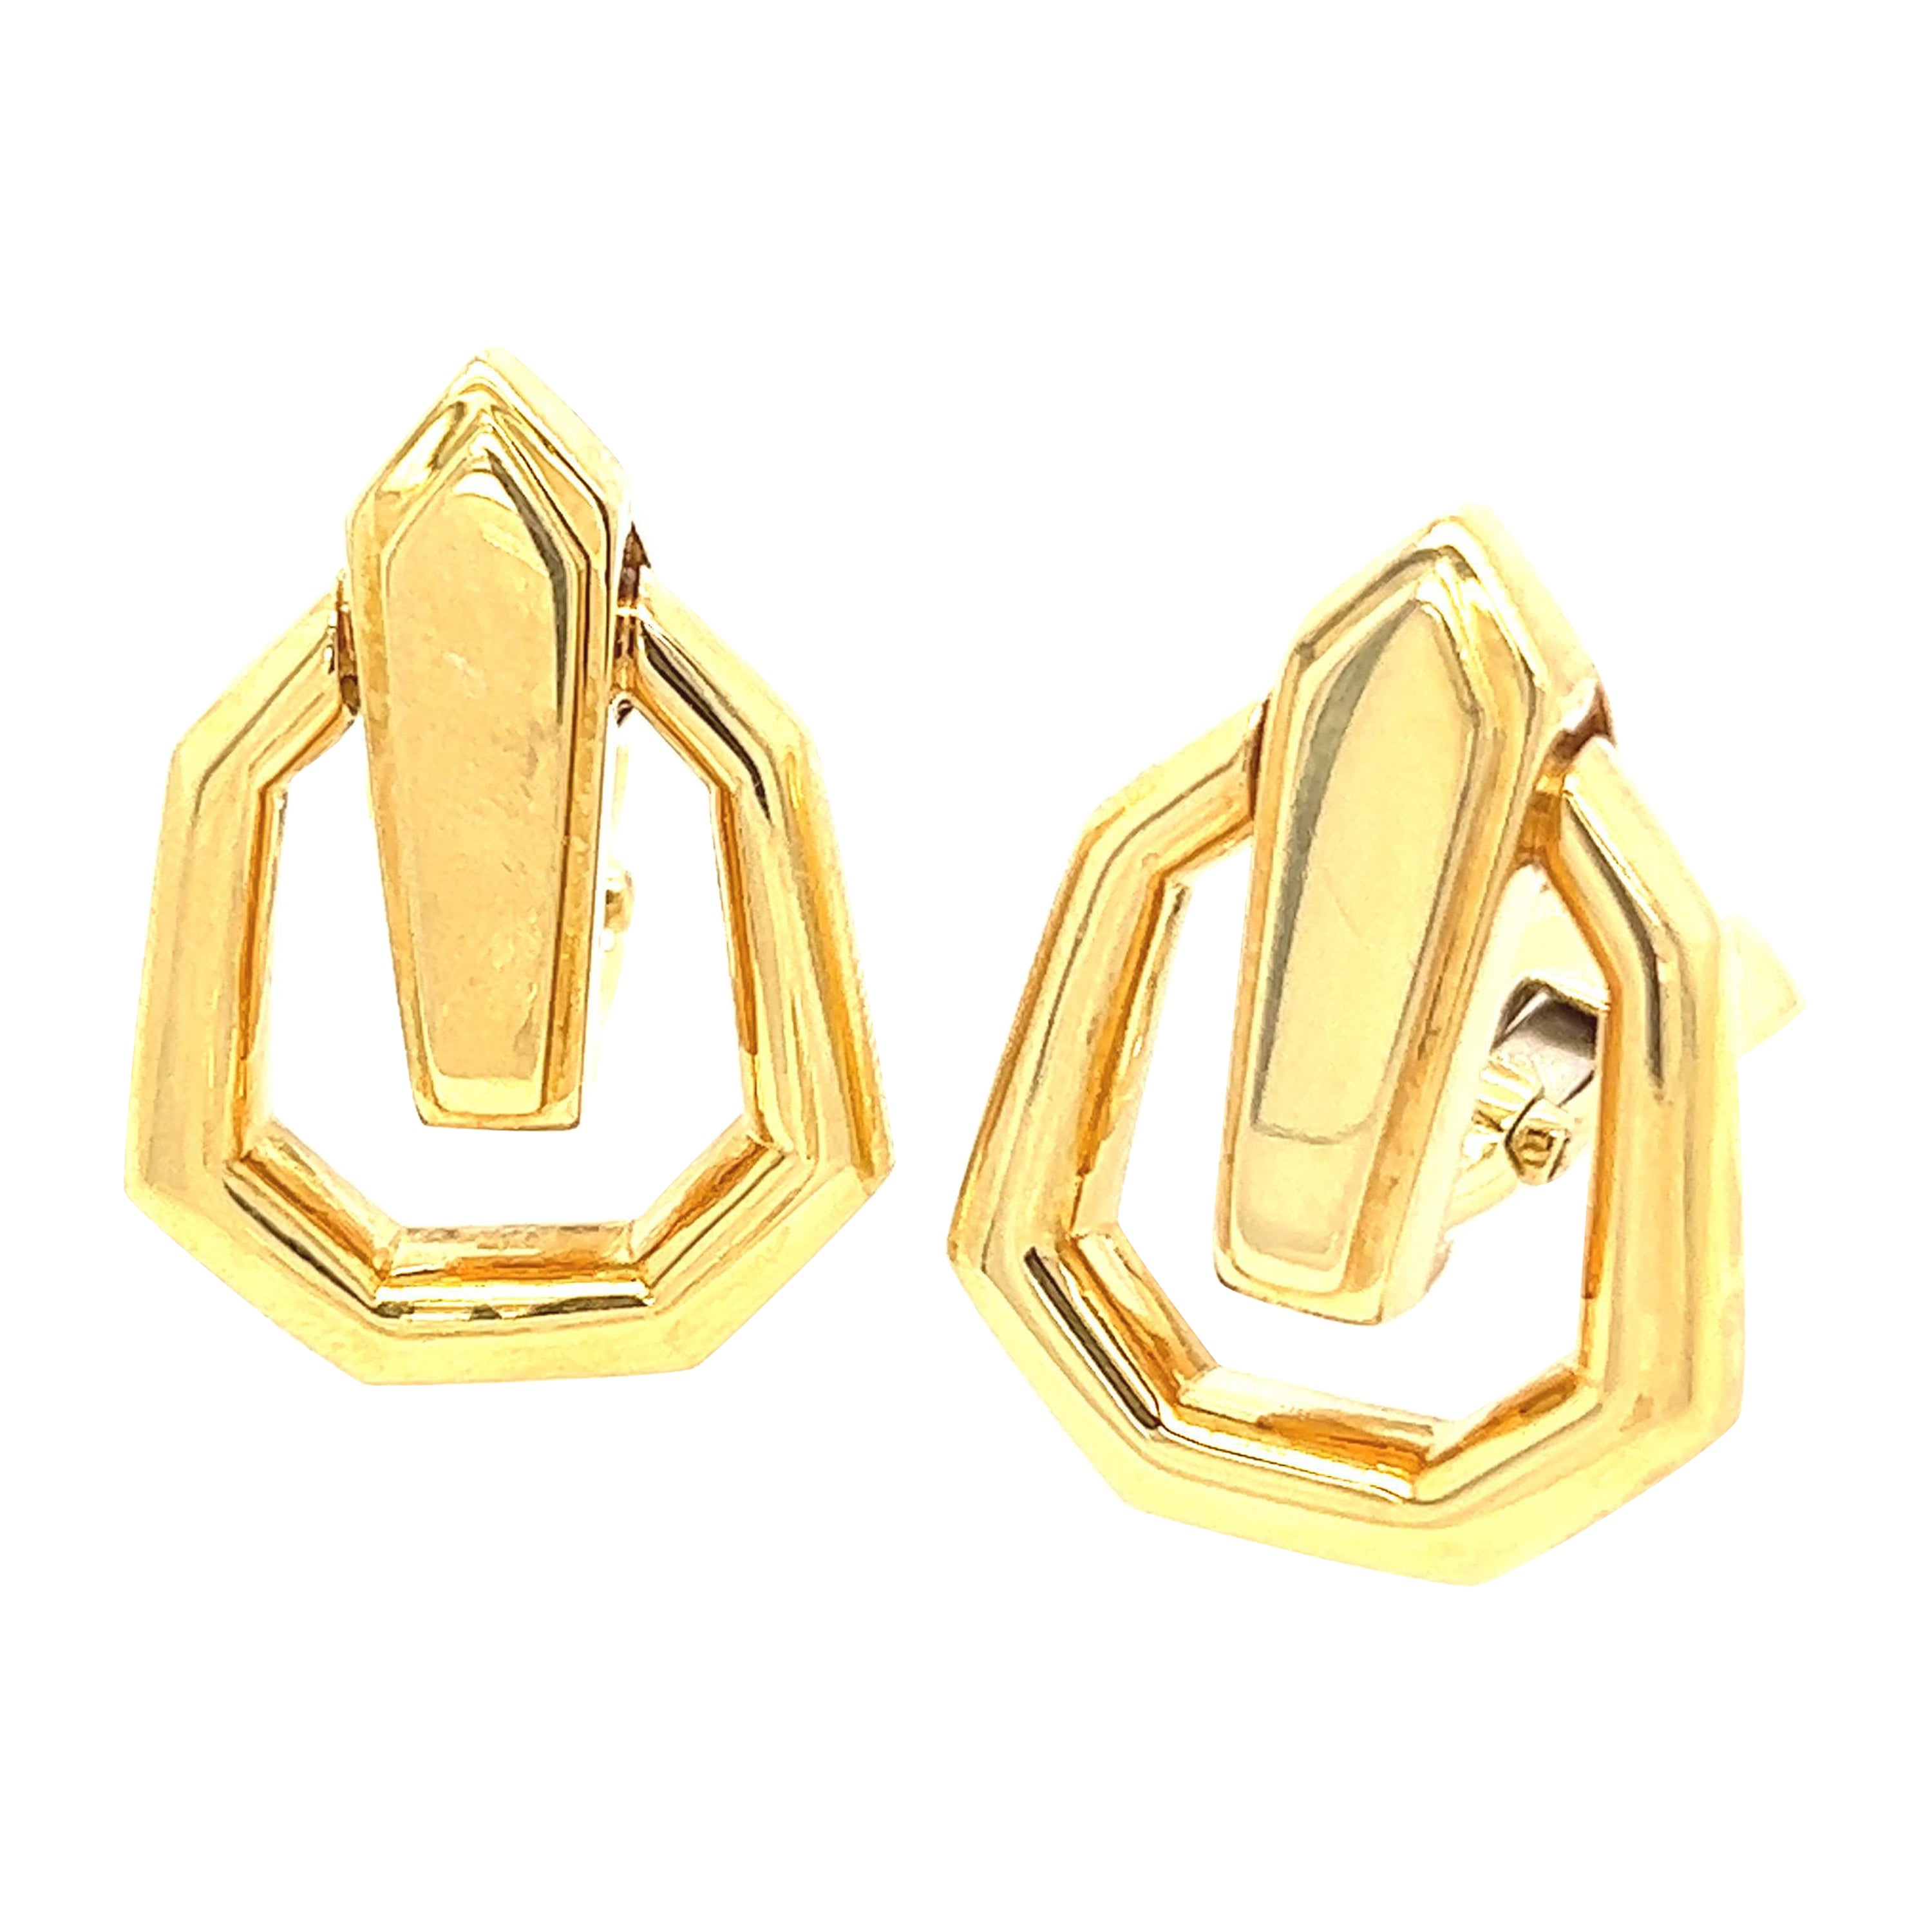 David Webb 18k Yellow Gold Door Knocker Style Earrings